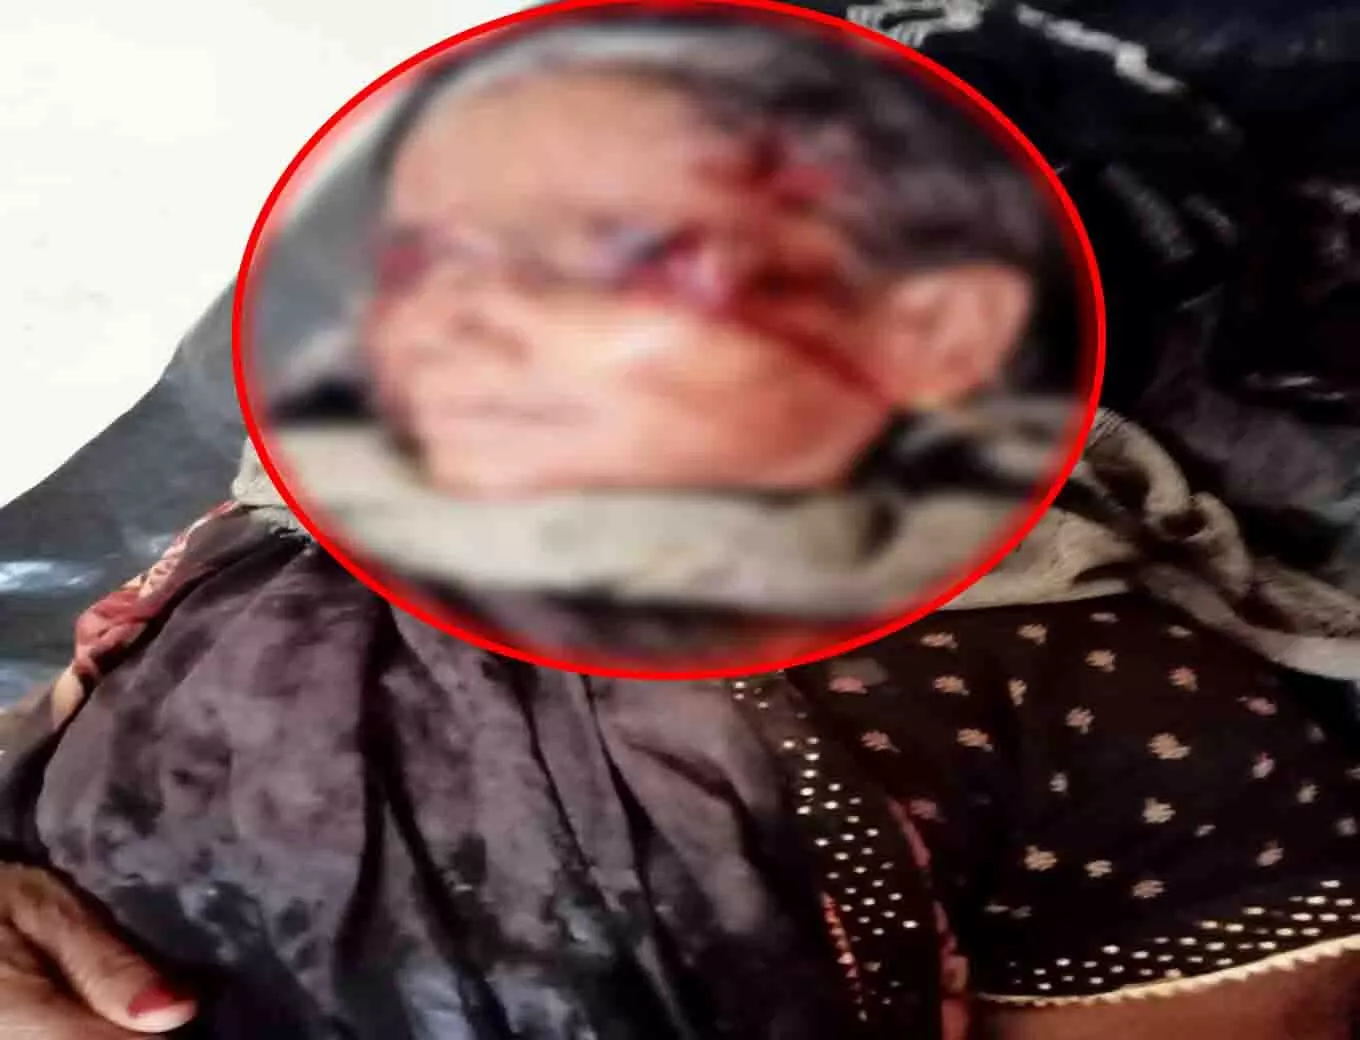 महुआ बिन रही महिला पर सियार ने किया हमला, घायल